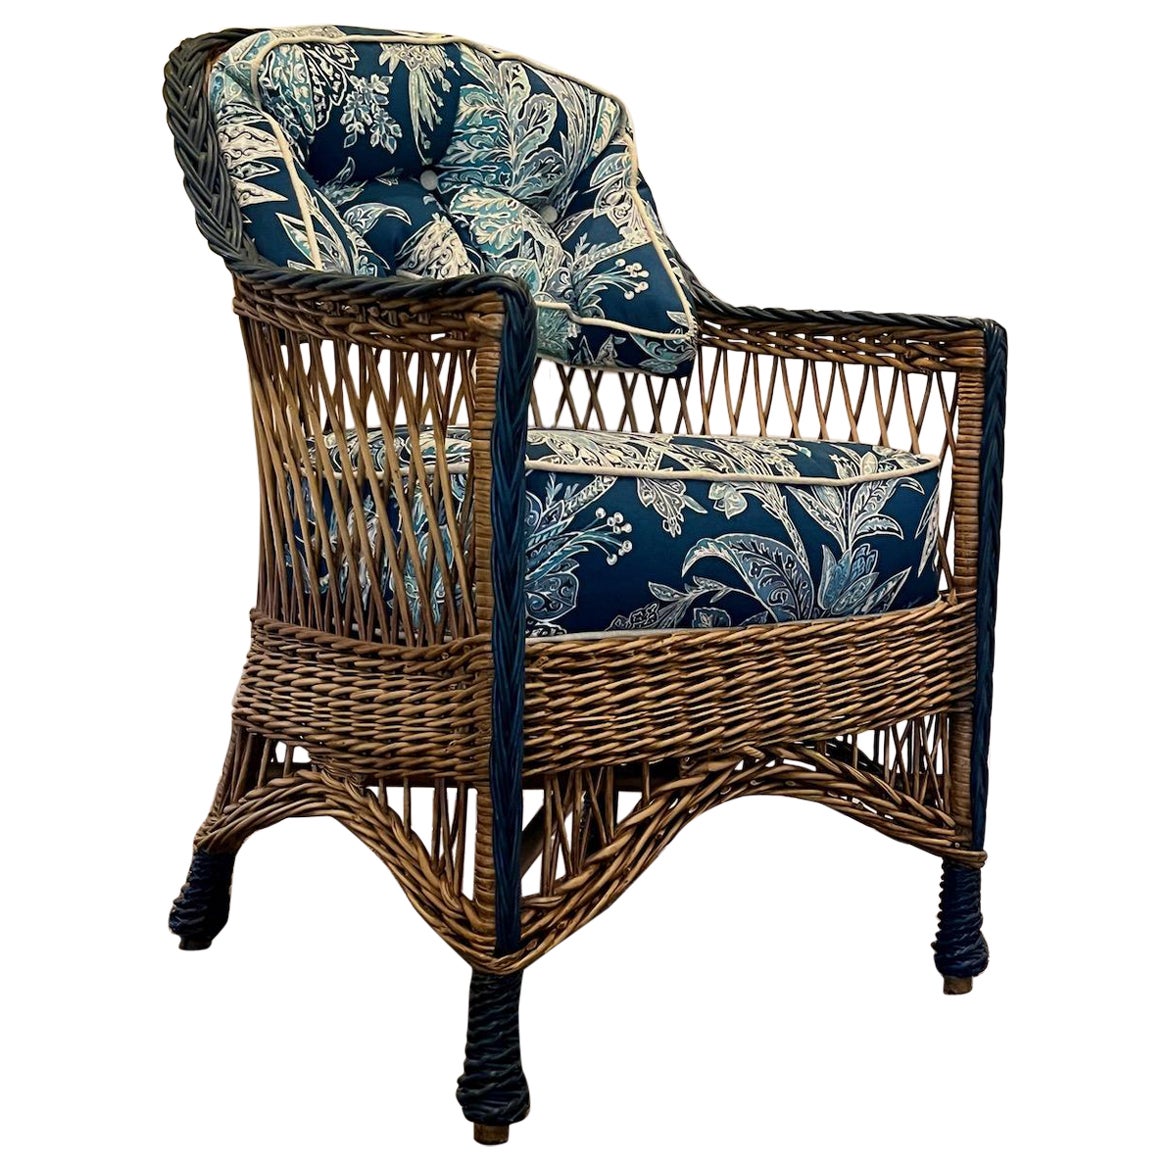 Ancienne chaise à bras de style Bar Harbor, tissée à la main, finition naturelle, avec garniture bleue en vente